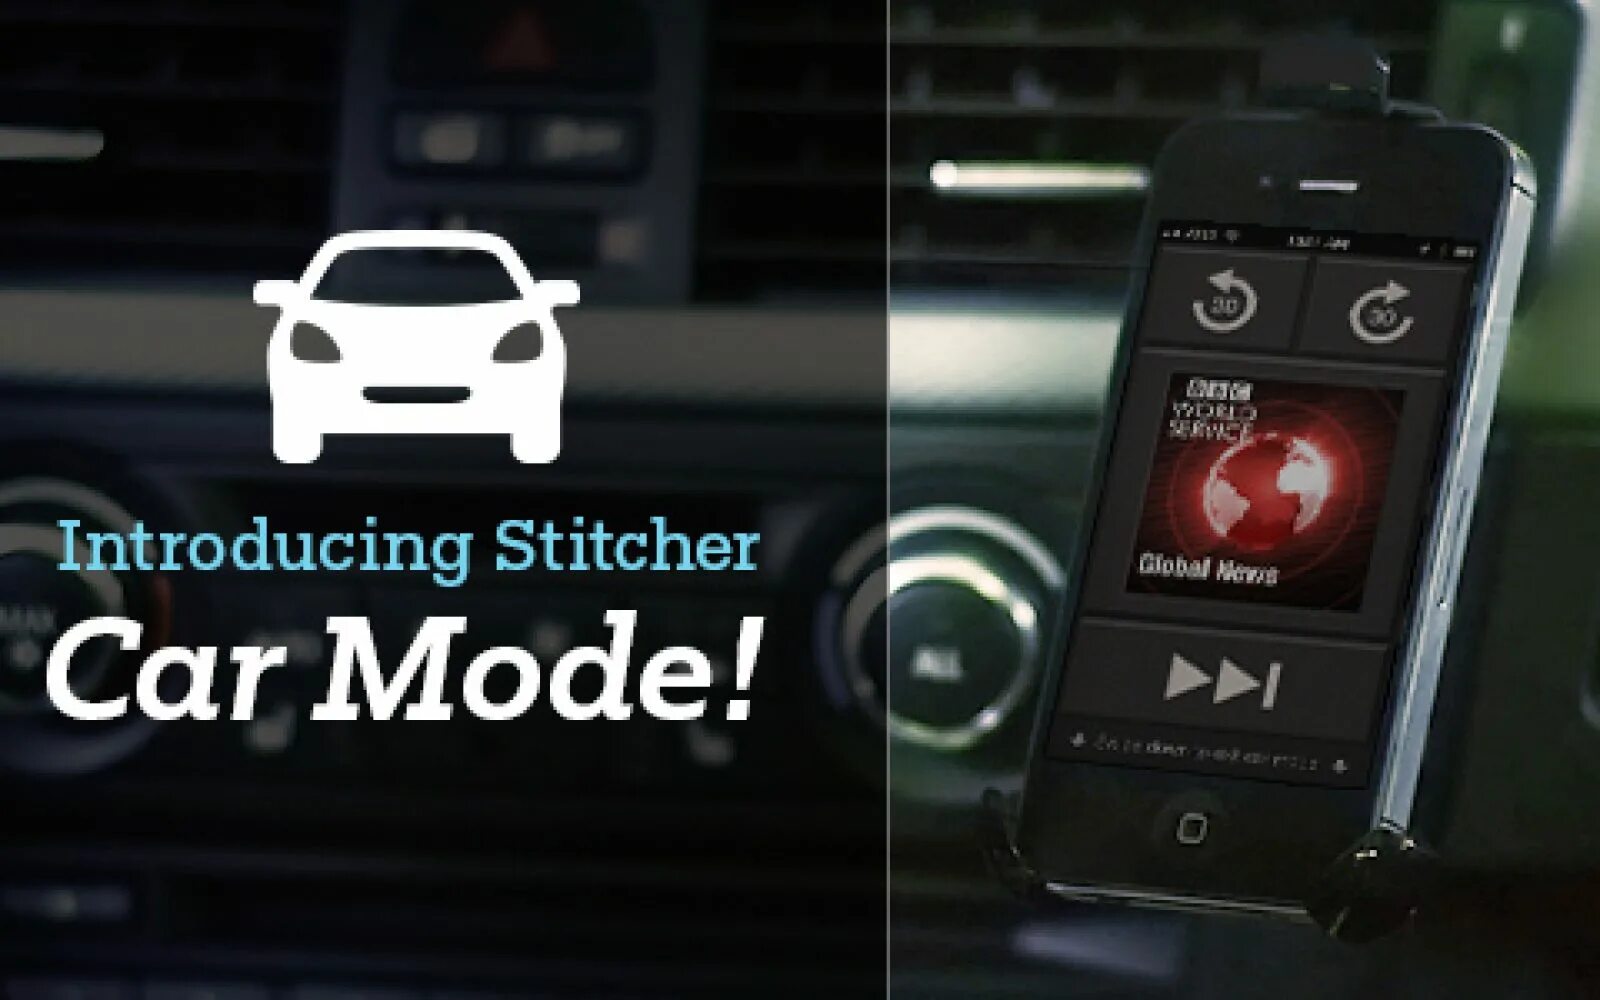 Drive mode cars modes. Приложение Stitcher для Шевроле Круз. Car Mode. Stitcher Mazda что это такое. Автомобиль Mode c5.